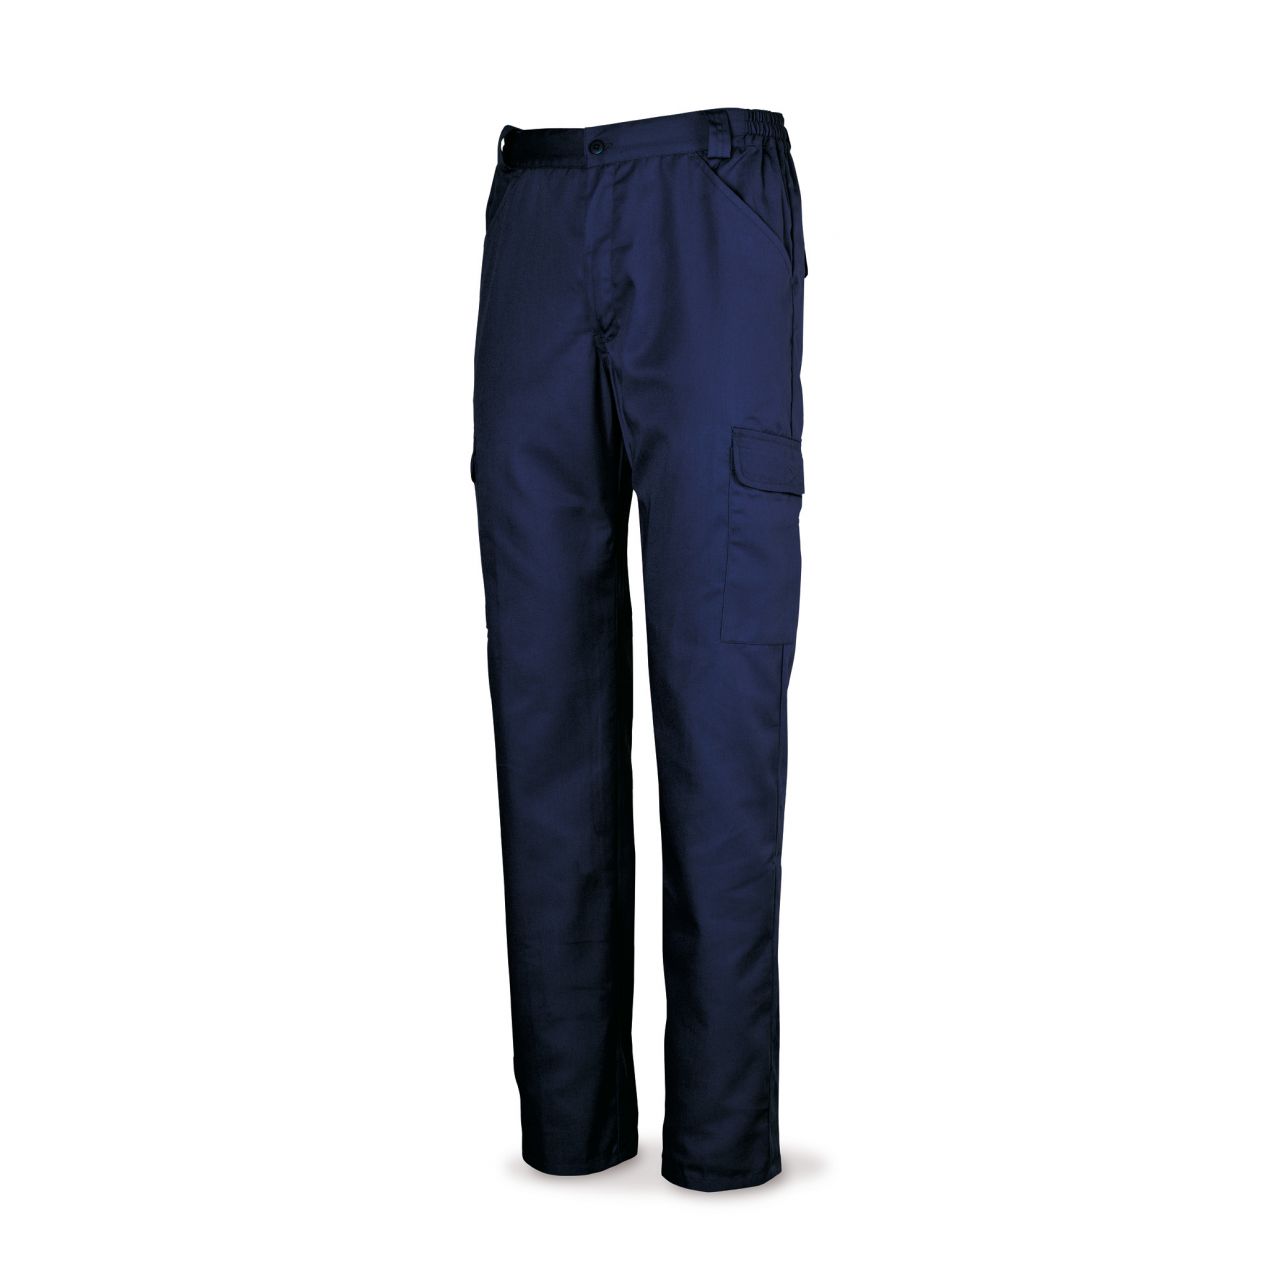 Pantalón azul marino algodón 200 g. Multibolsillos. 56